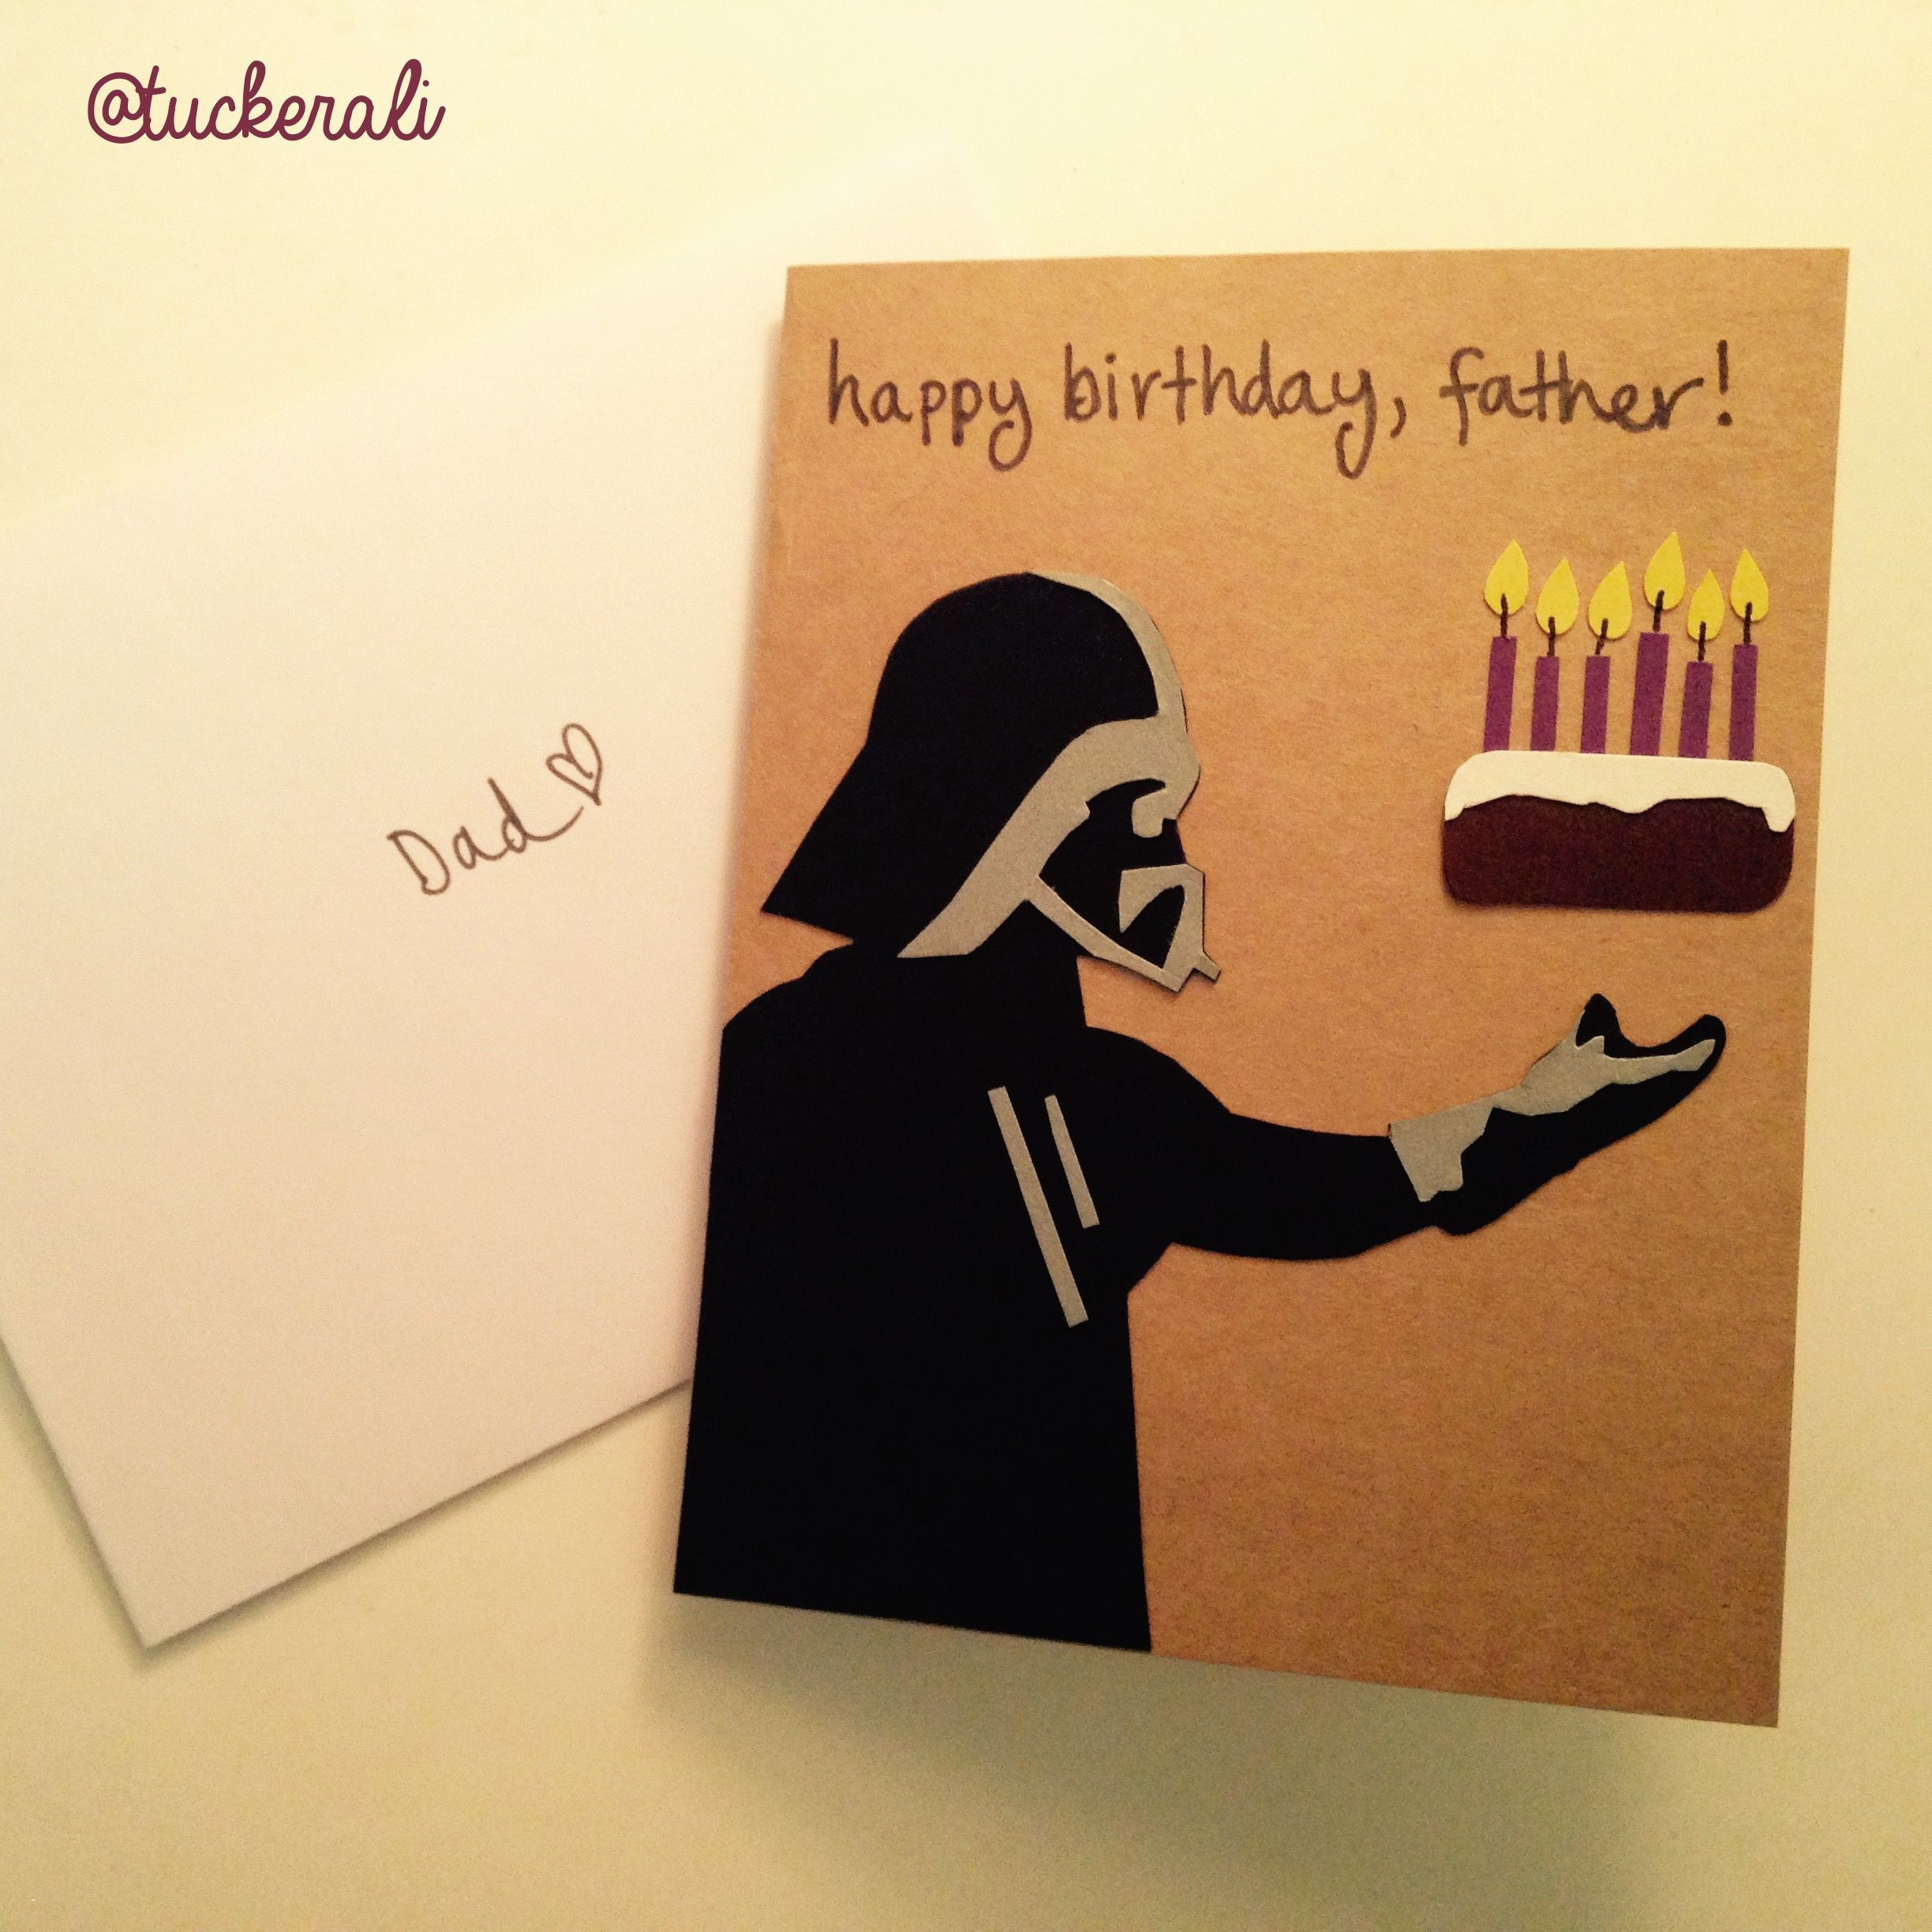 Birthday Card Ideas For Friend Happy Birthday Cards For A Friend Handmade Birthday Card Ideas For